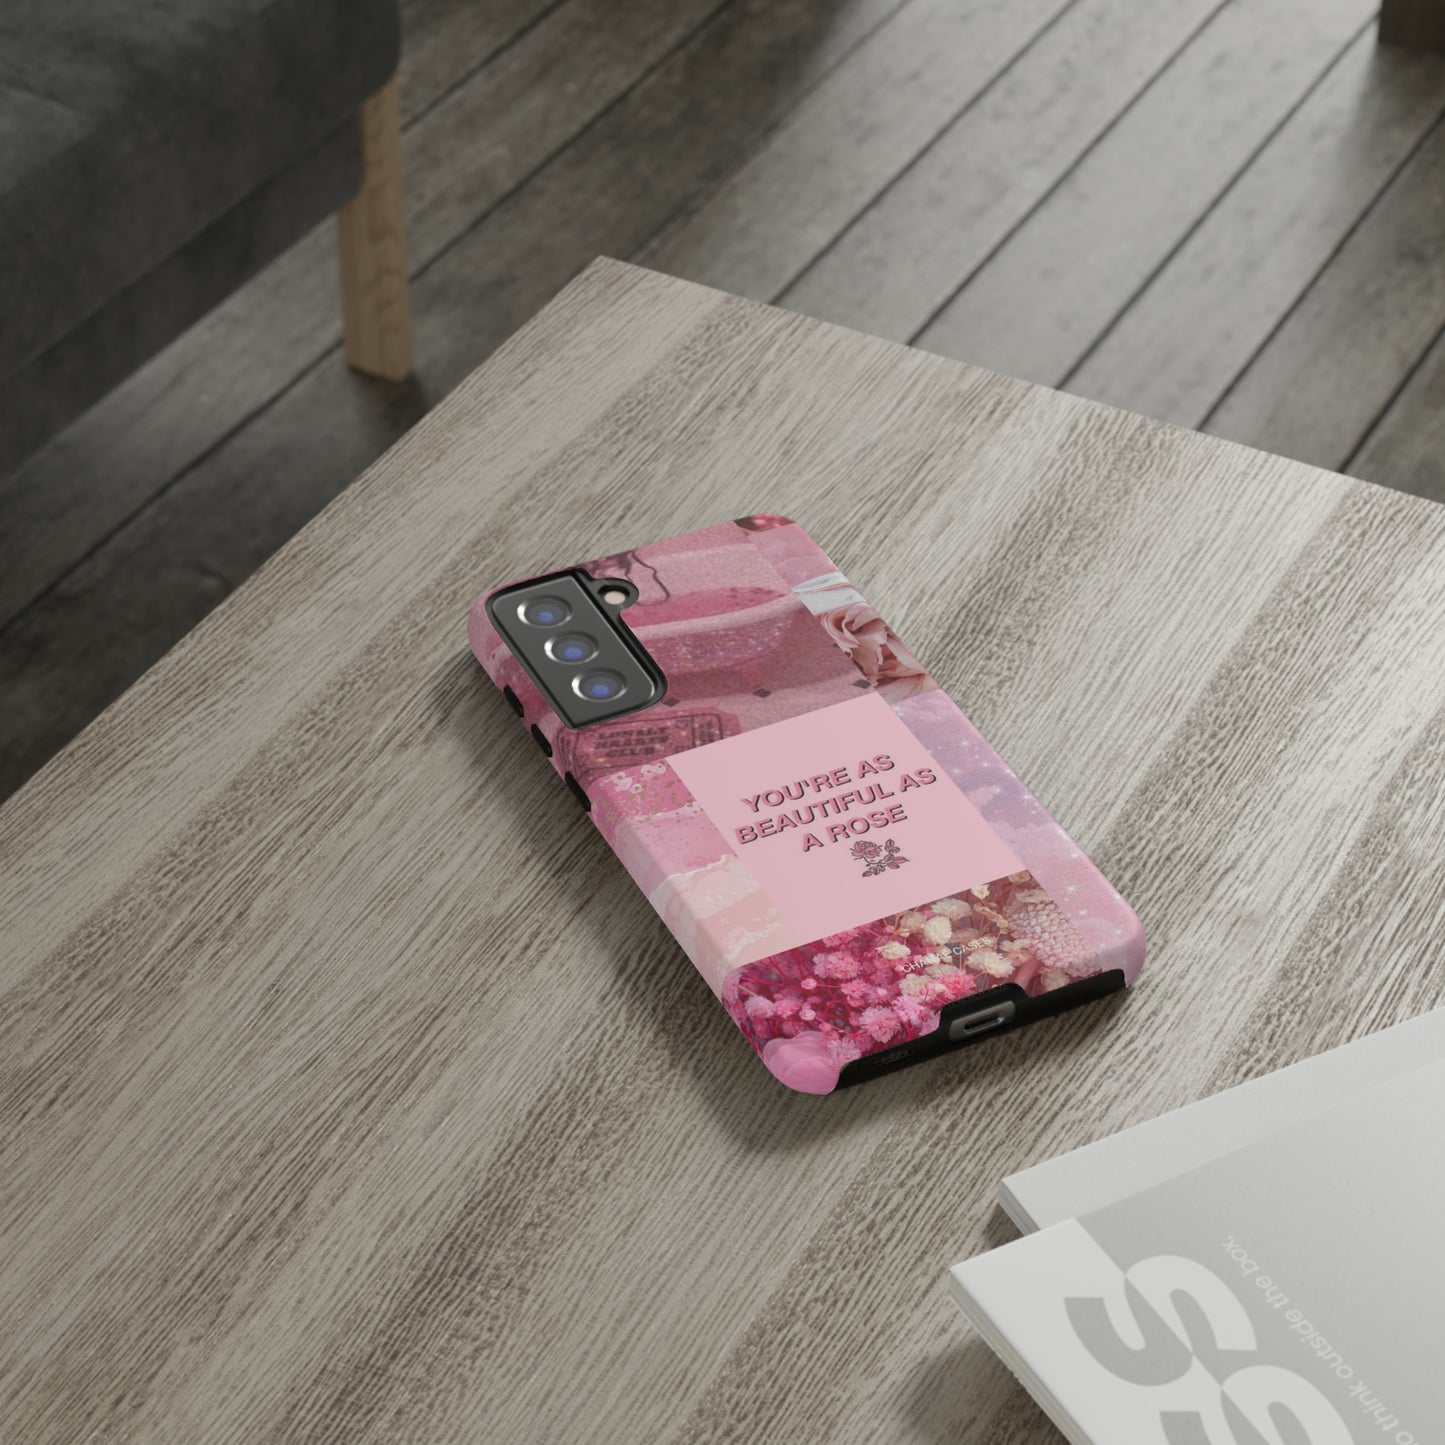 Beautiful Rose Samsung "Tough" Case (Pink)